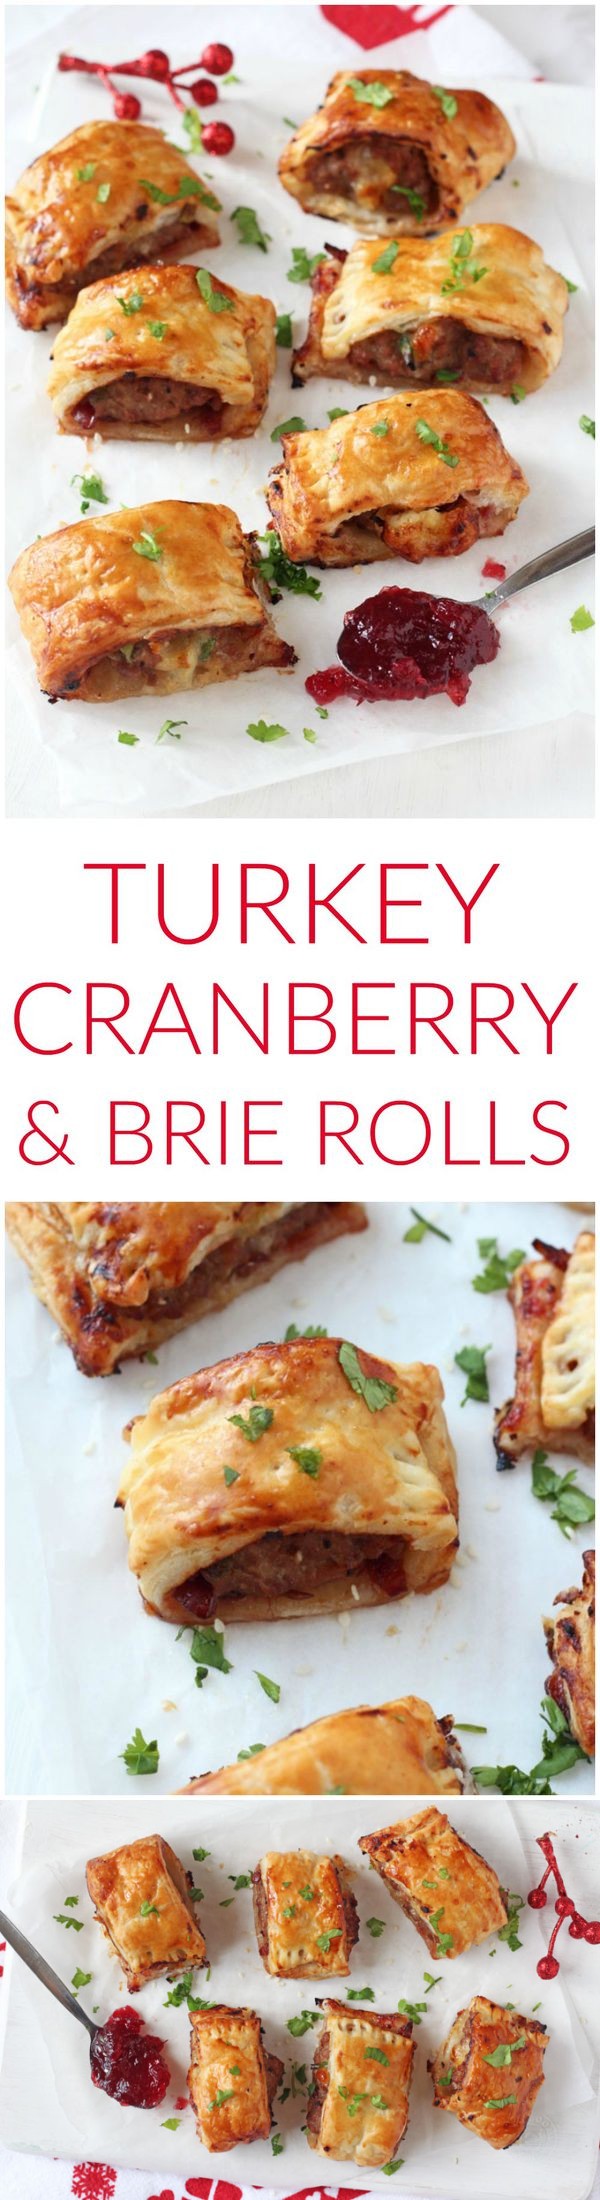 Turkey, Cranberry & Brie Rolls